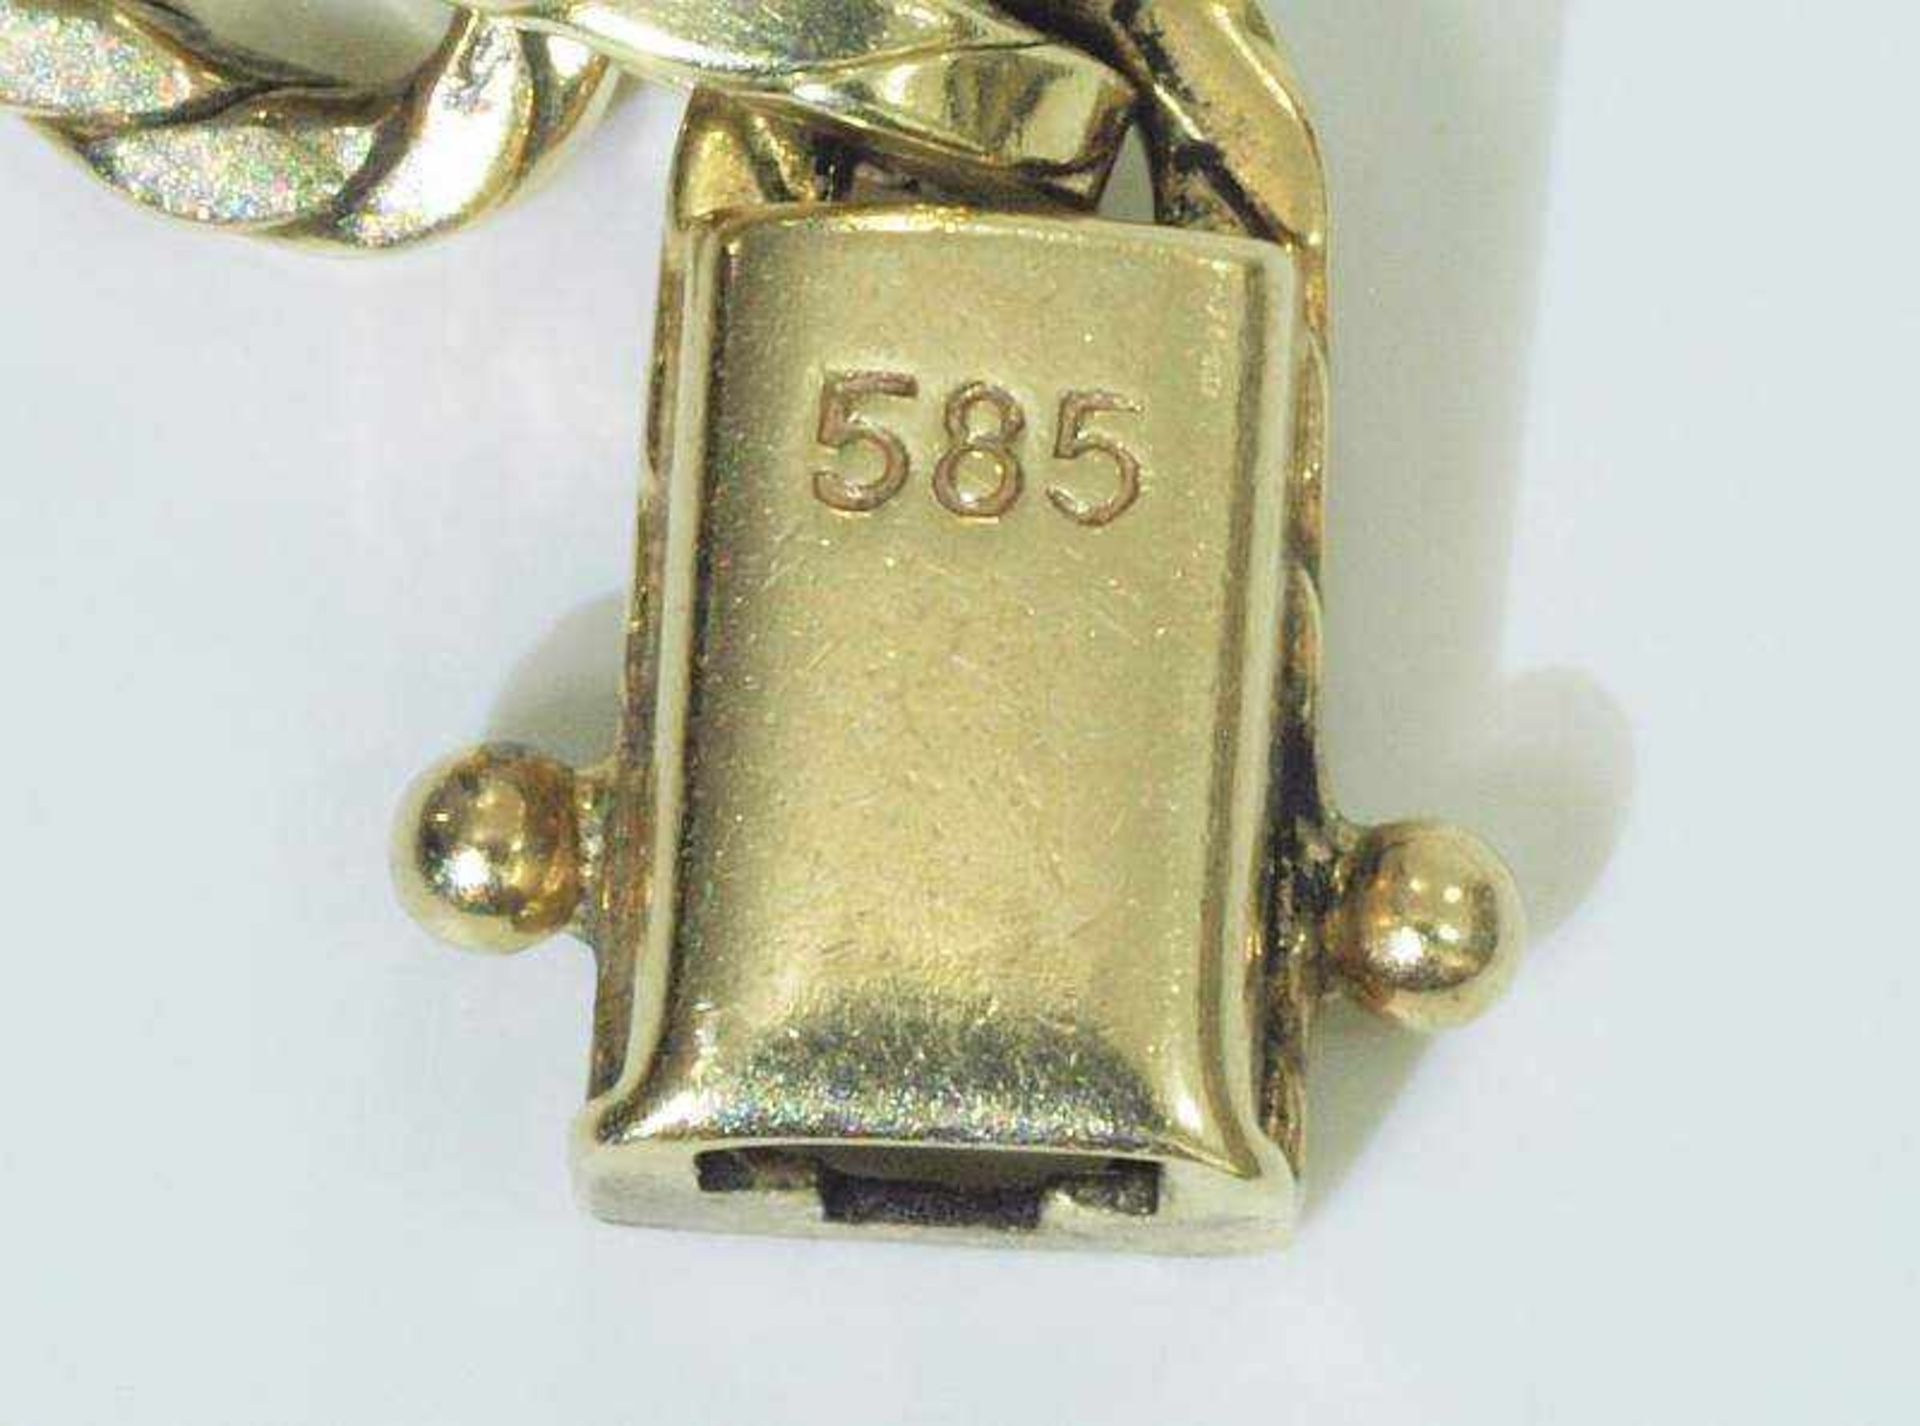 Armband mit strukturierten Gliedern.Armband mit strukturierten Gliedern. 585er Gelbgold, - Image 5 of 5